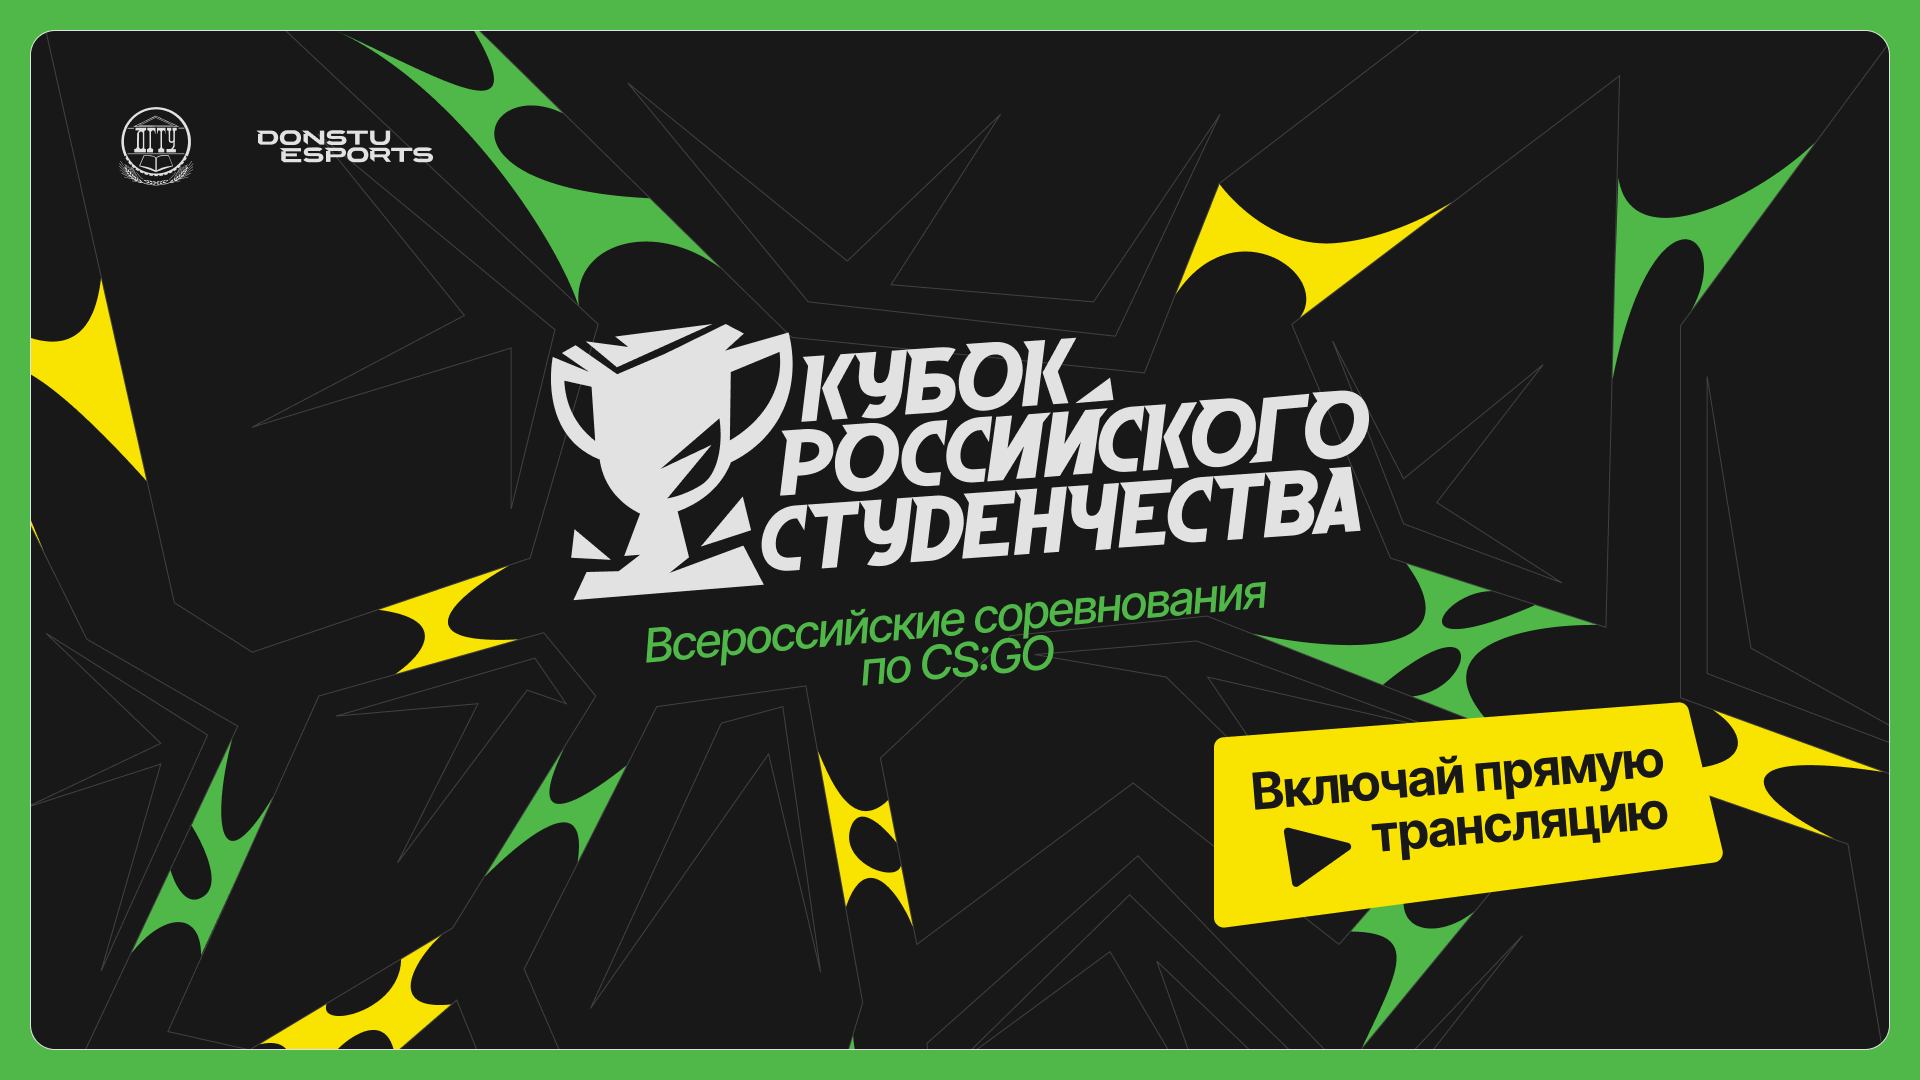 Кубок российского студенчества | ЦФО | Стрим 1 | Donstu Esports